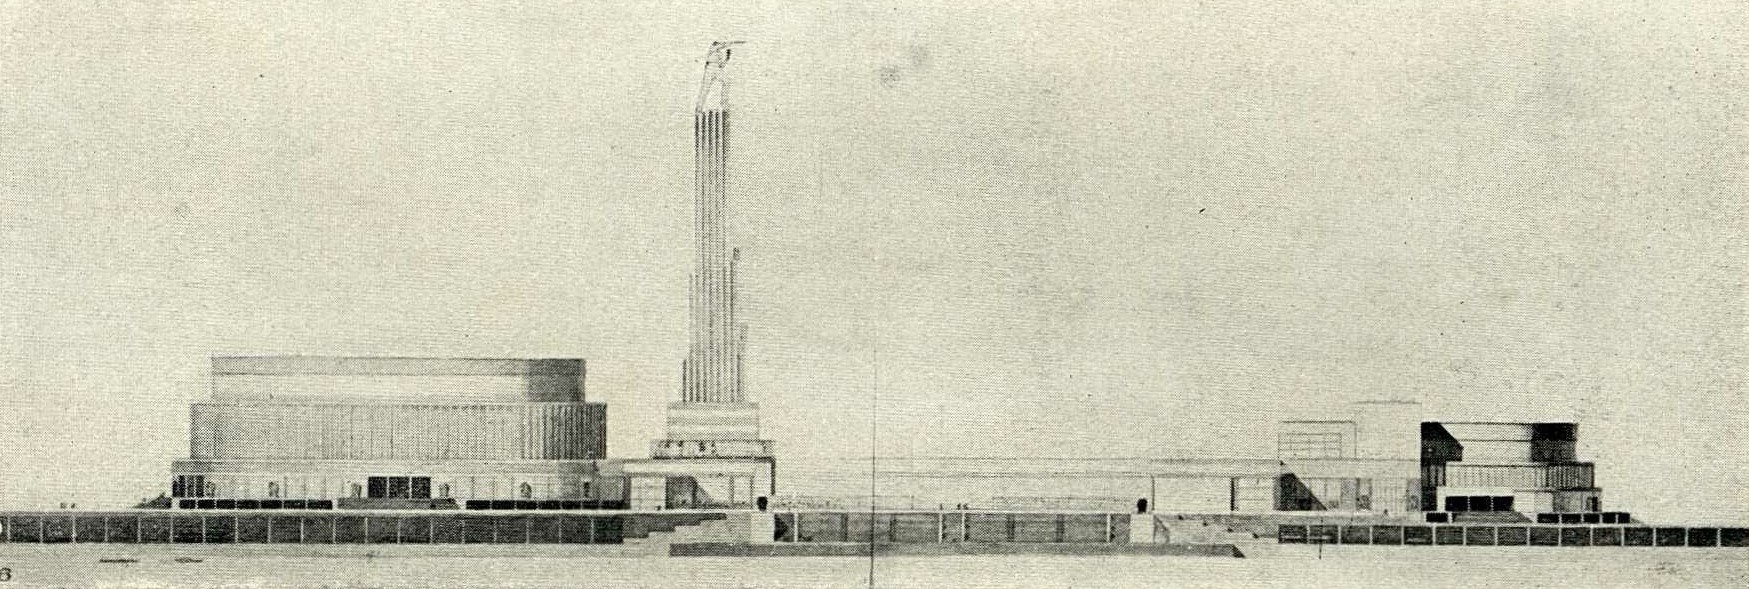 Конкурсный проект Дворца Советов (1932). Иофан Б. М.  (Москва. Высшая премия)